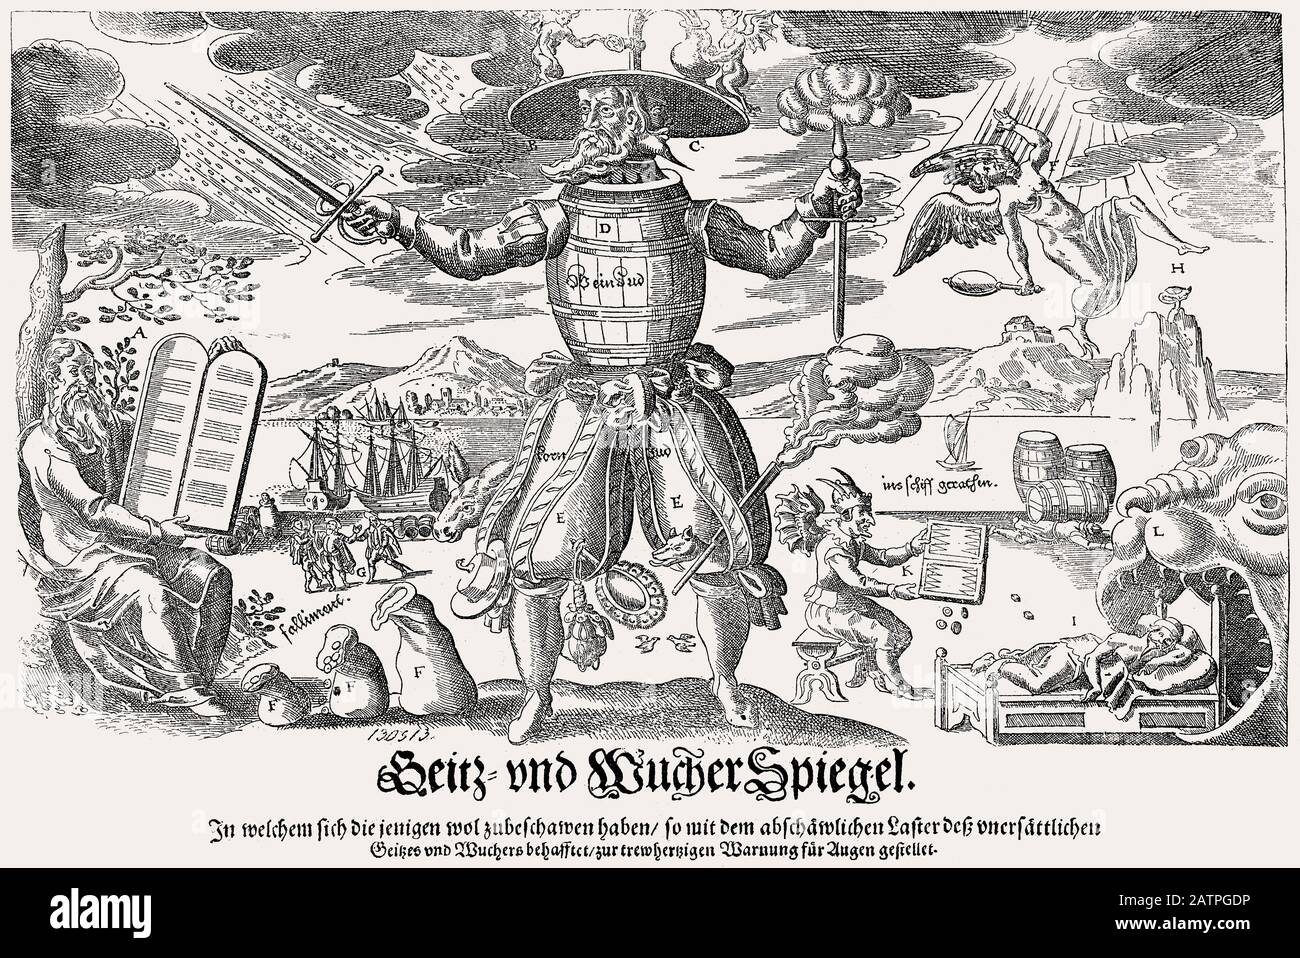 antisemitic progaganda on money usury, 17th century Stock Photo